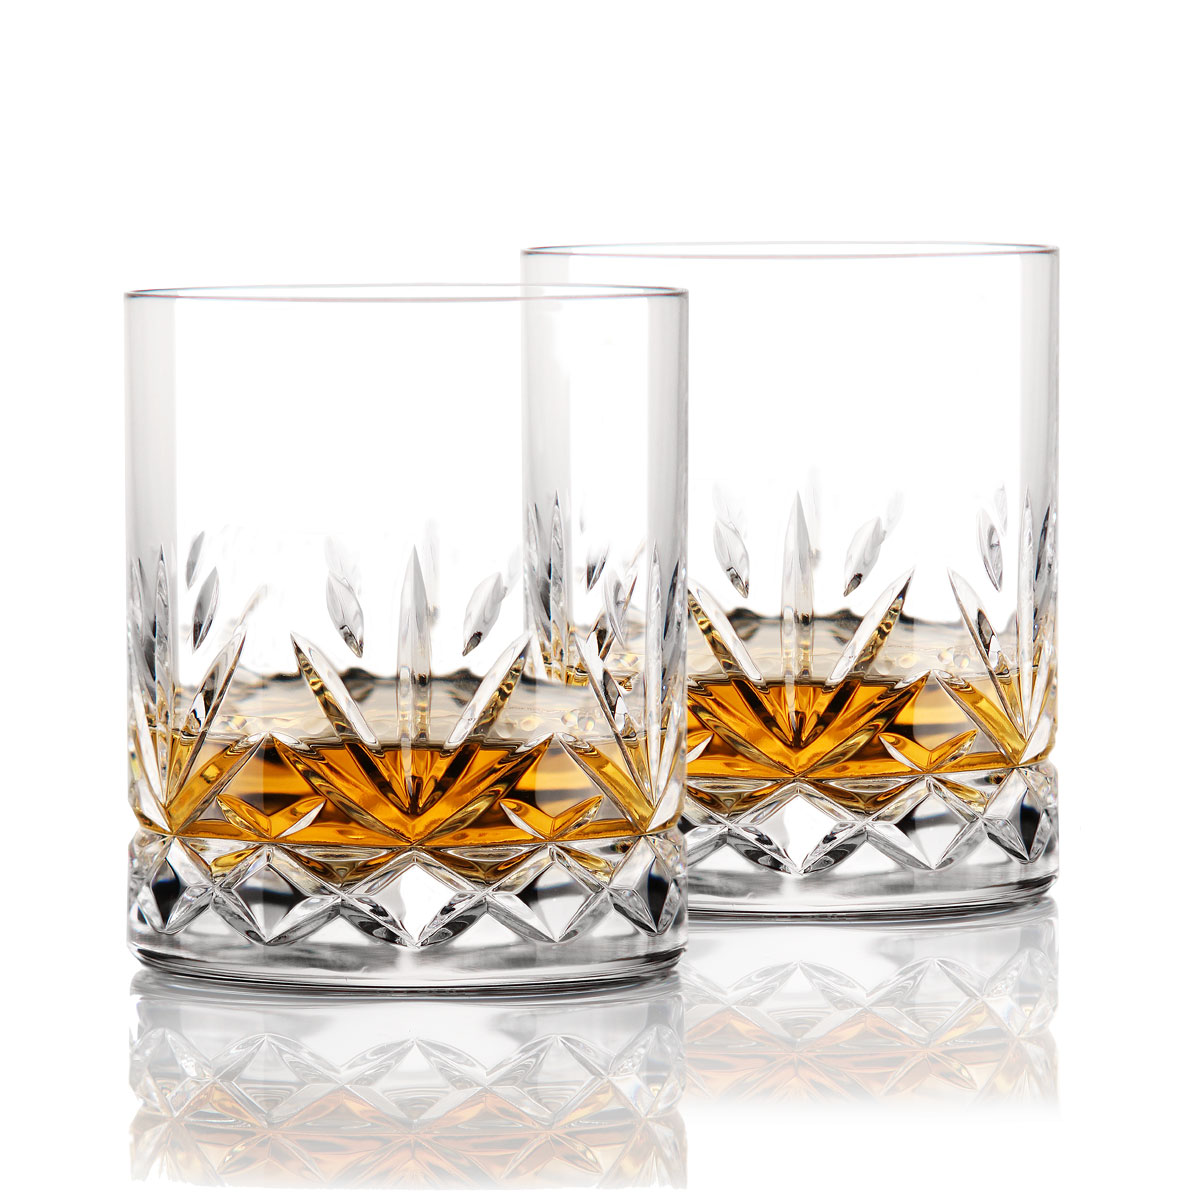 Cashs Ireland Annestown Irish Whiskey DOF Glass, Pair